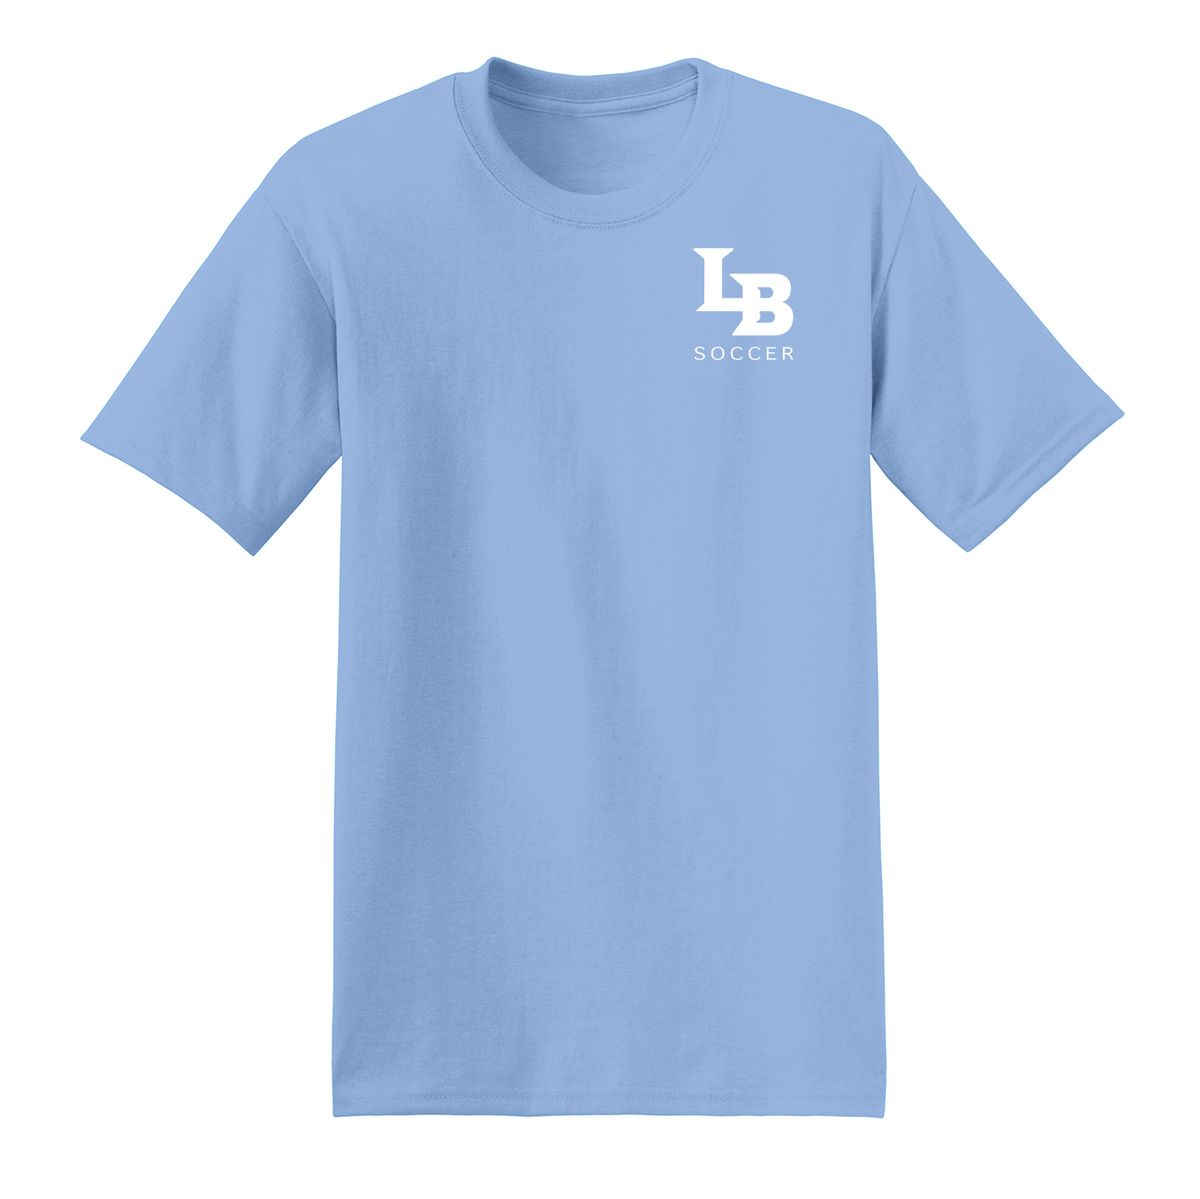 Long Beach Soccer T-Shirt